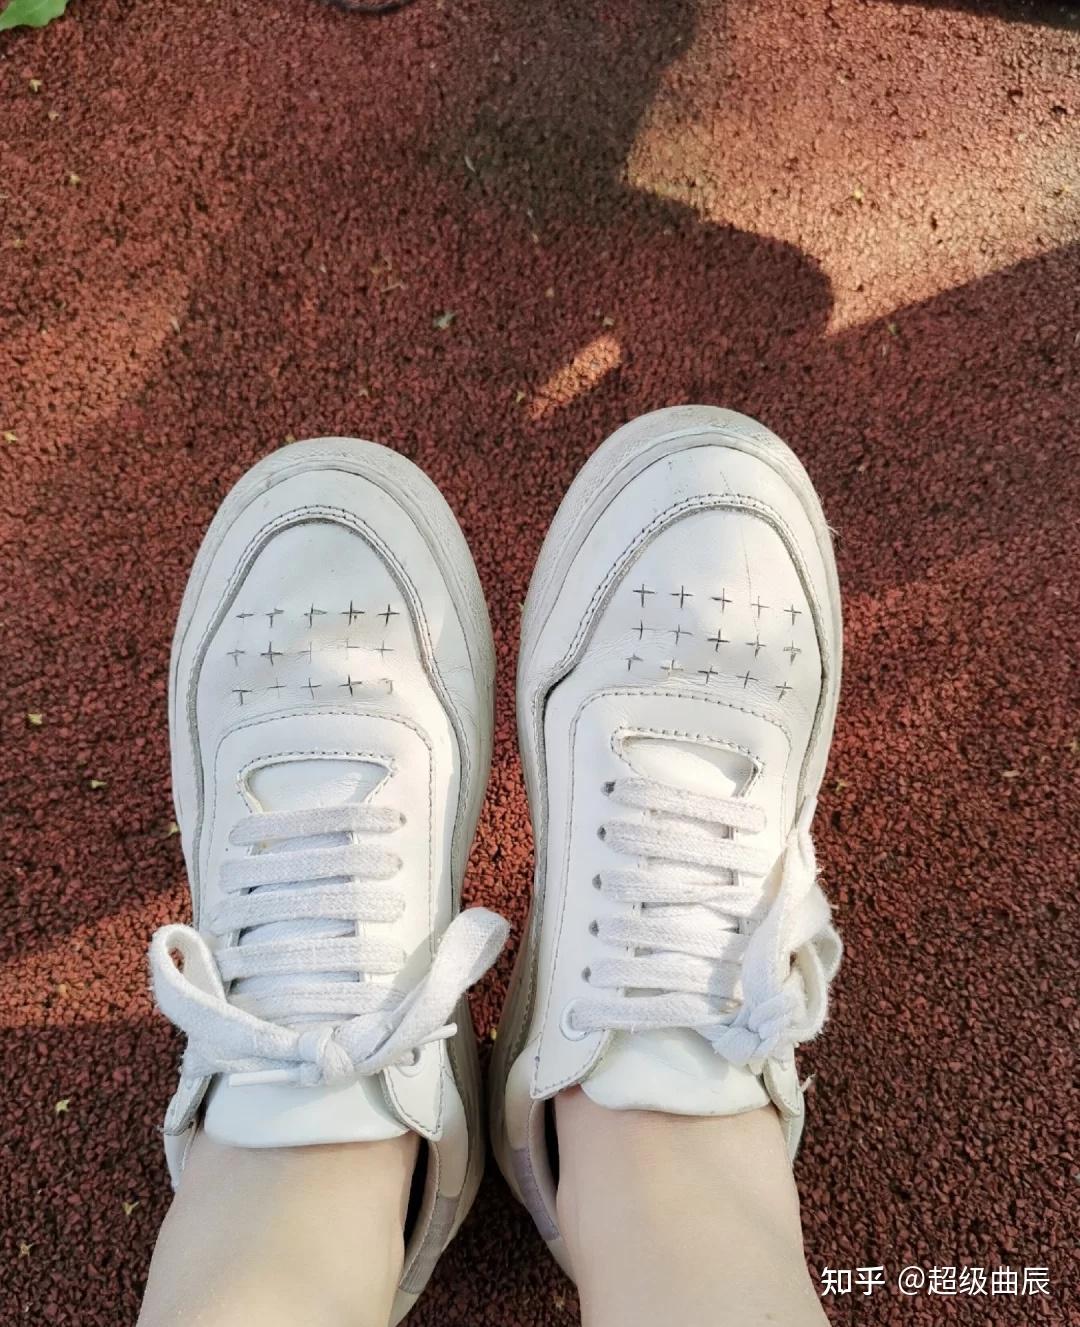 夏天很多女生光脚穿运动鞋不会臭脚吗